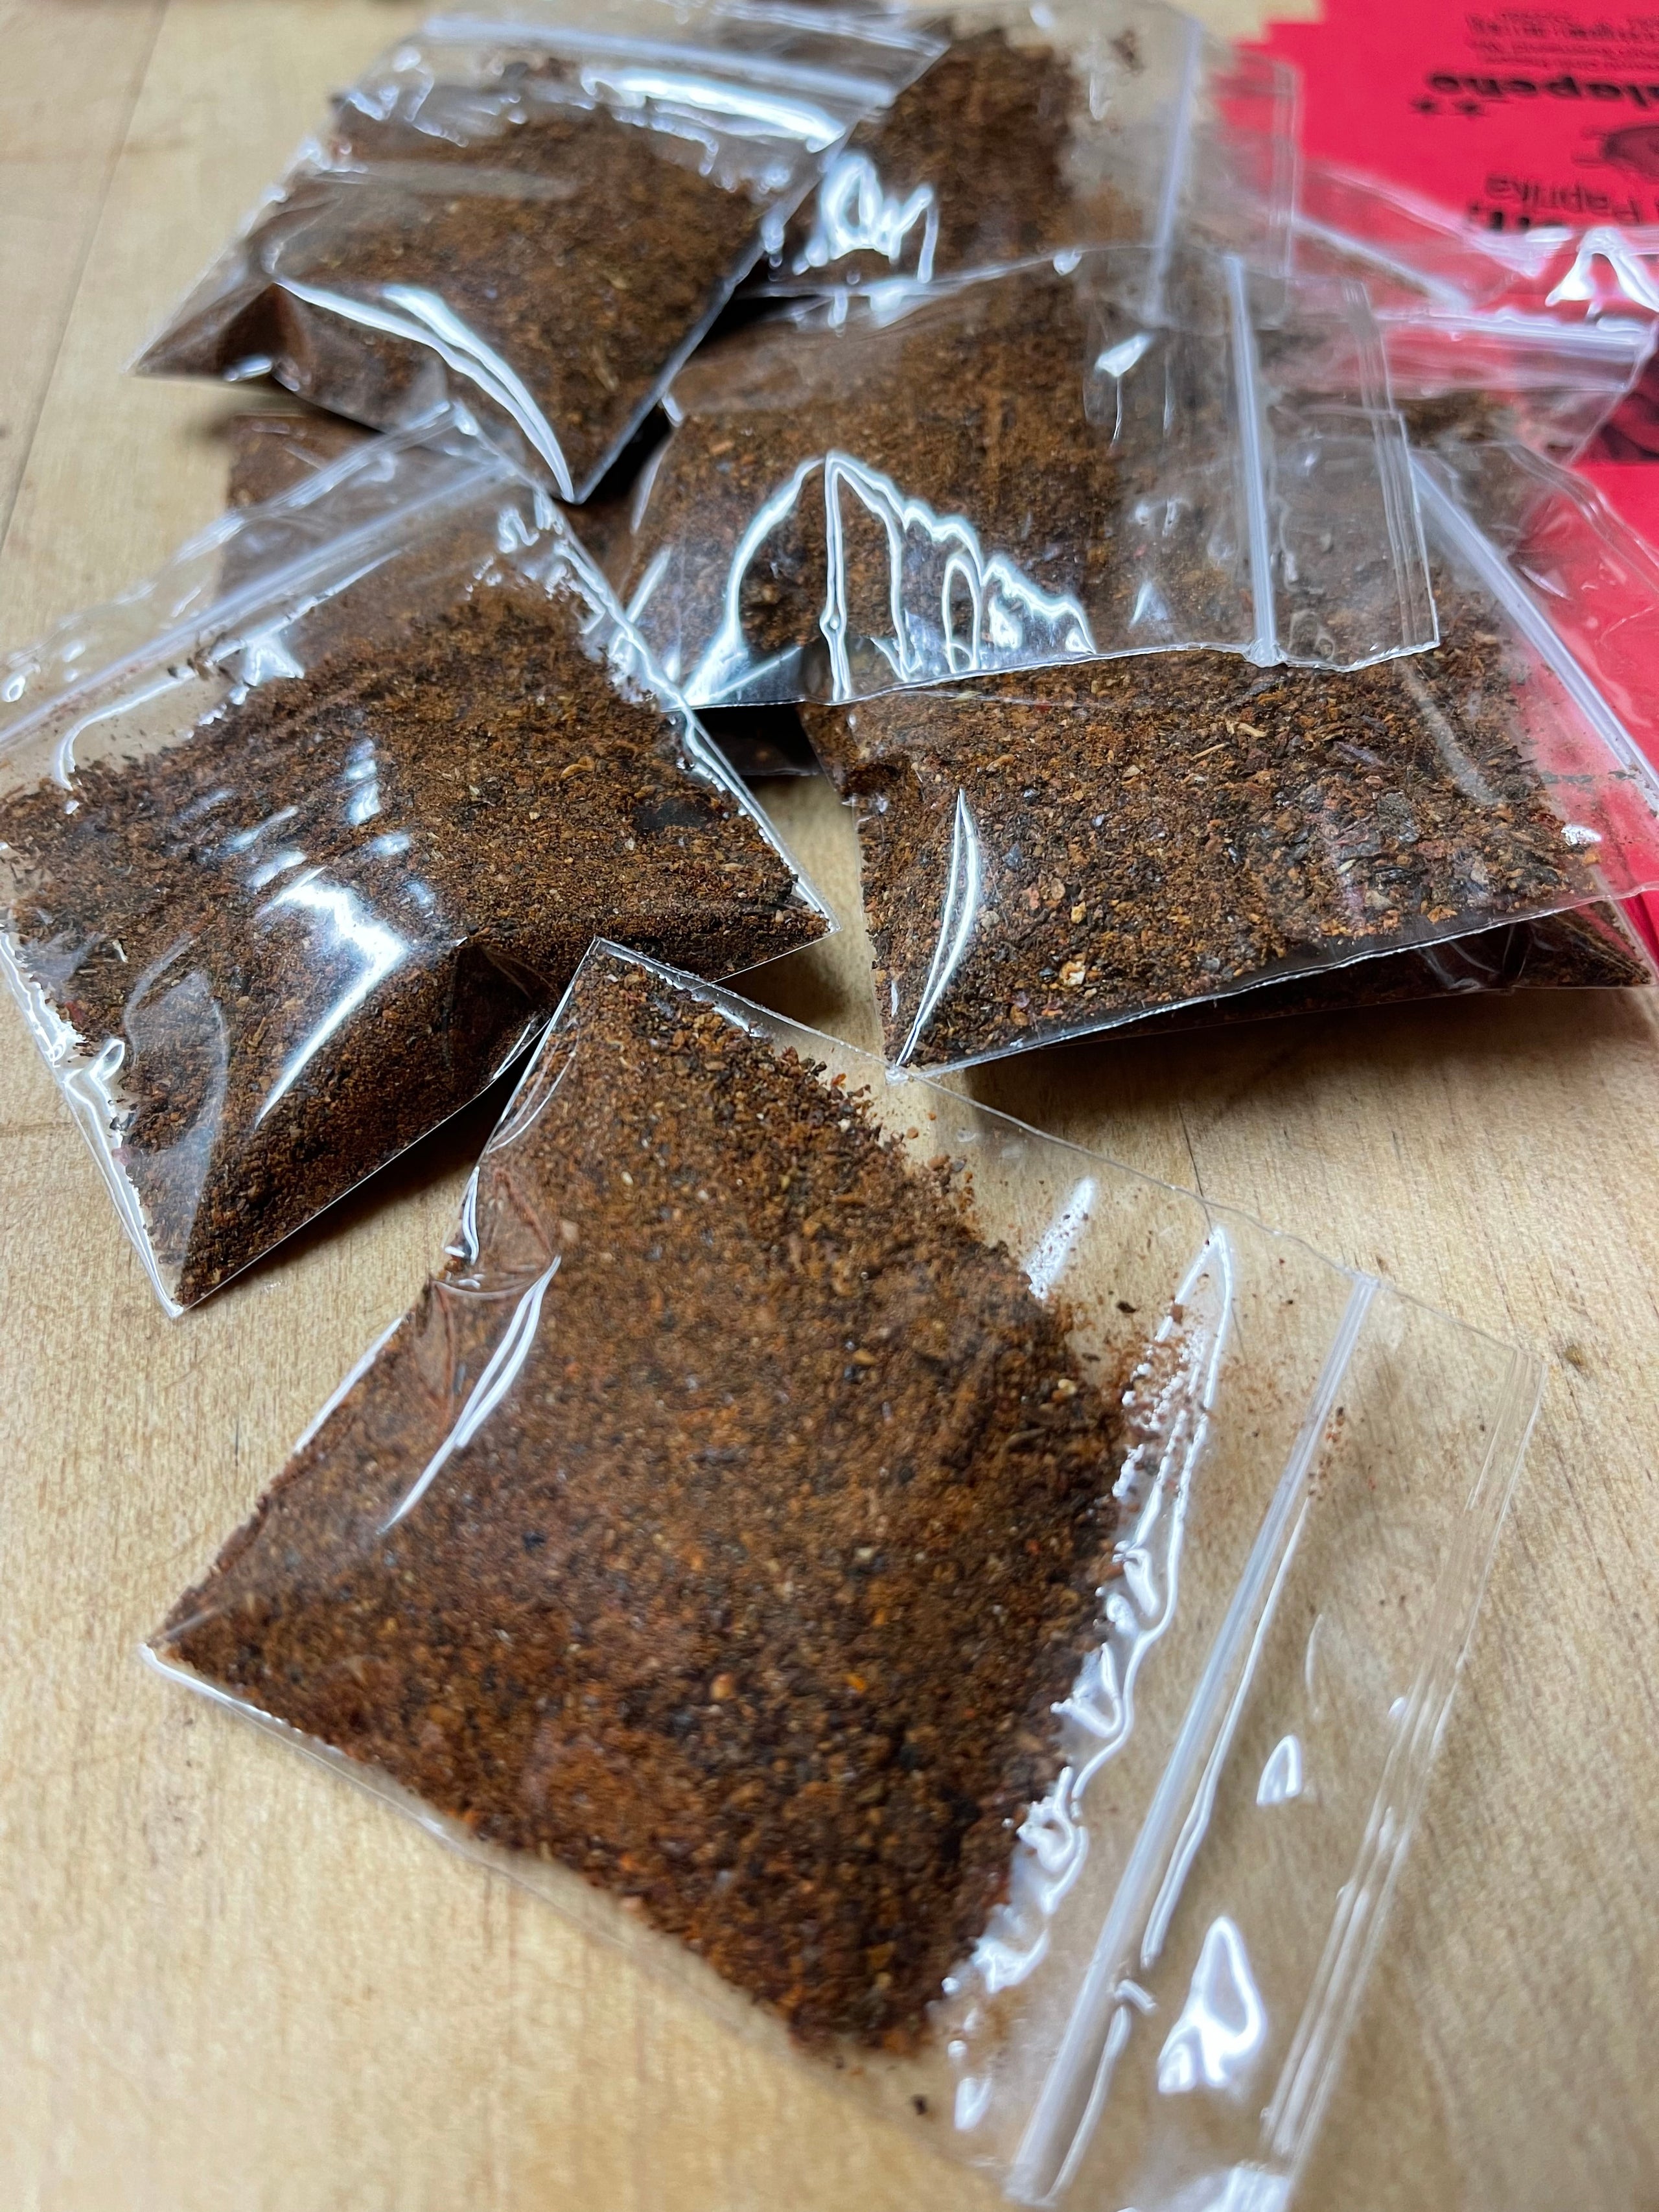 Chili Sampler Pack